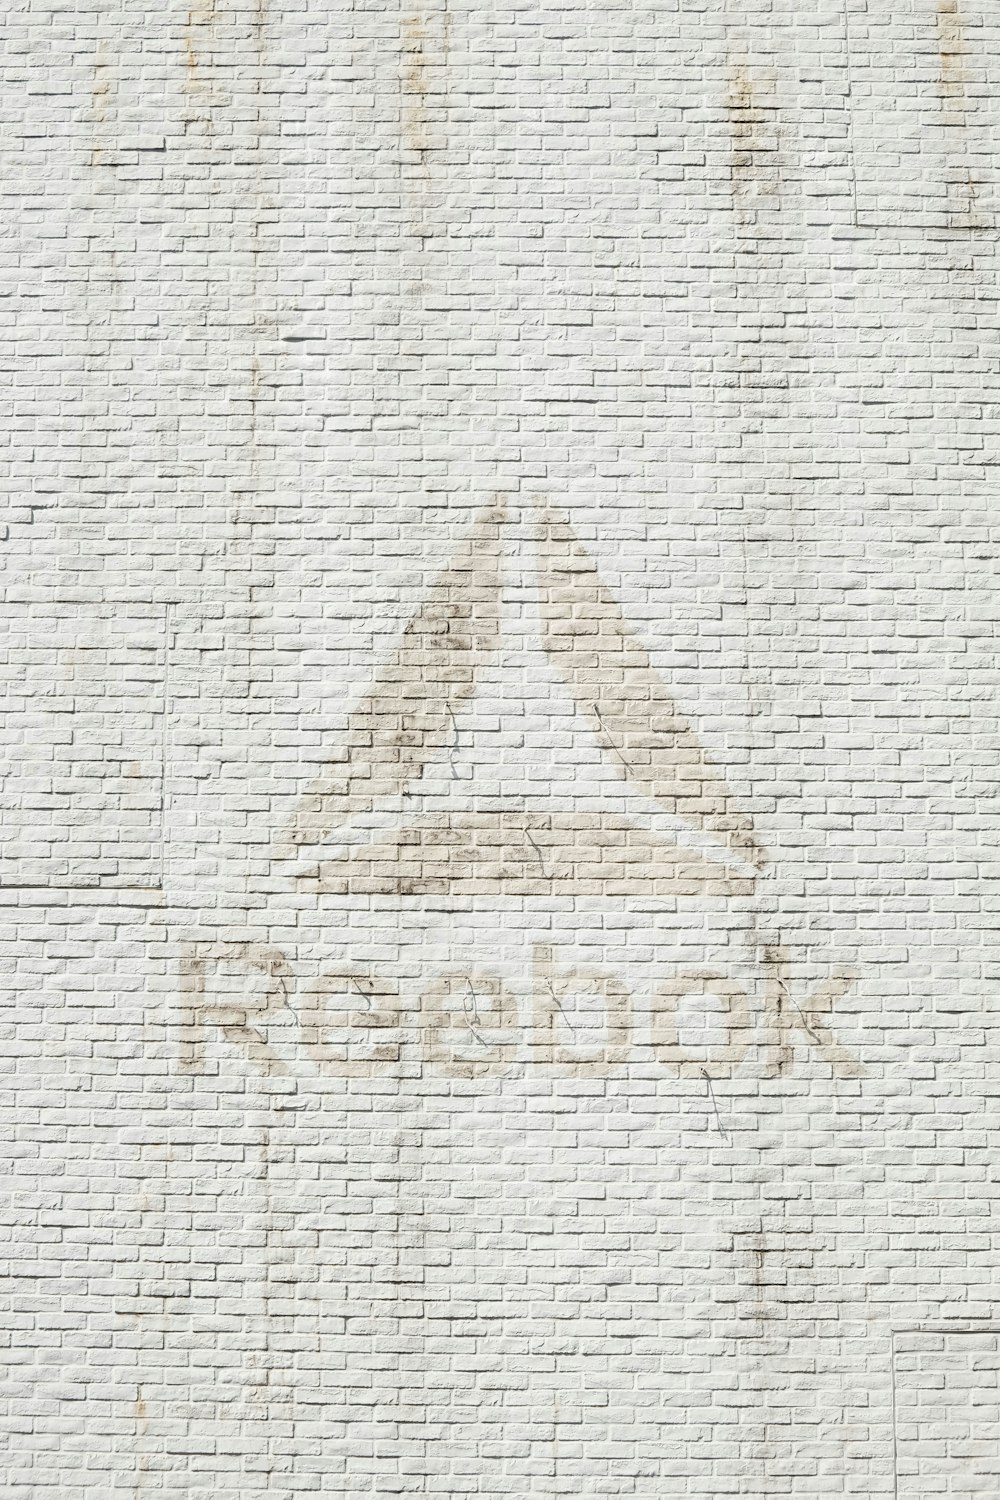 foto em close-up do logotipo da Reebok na parede